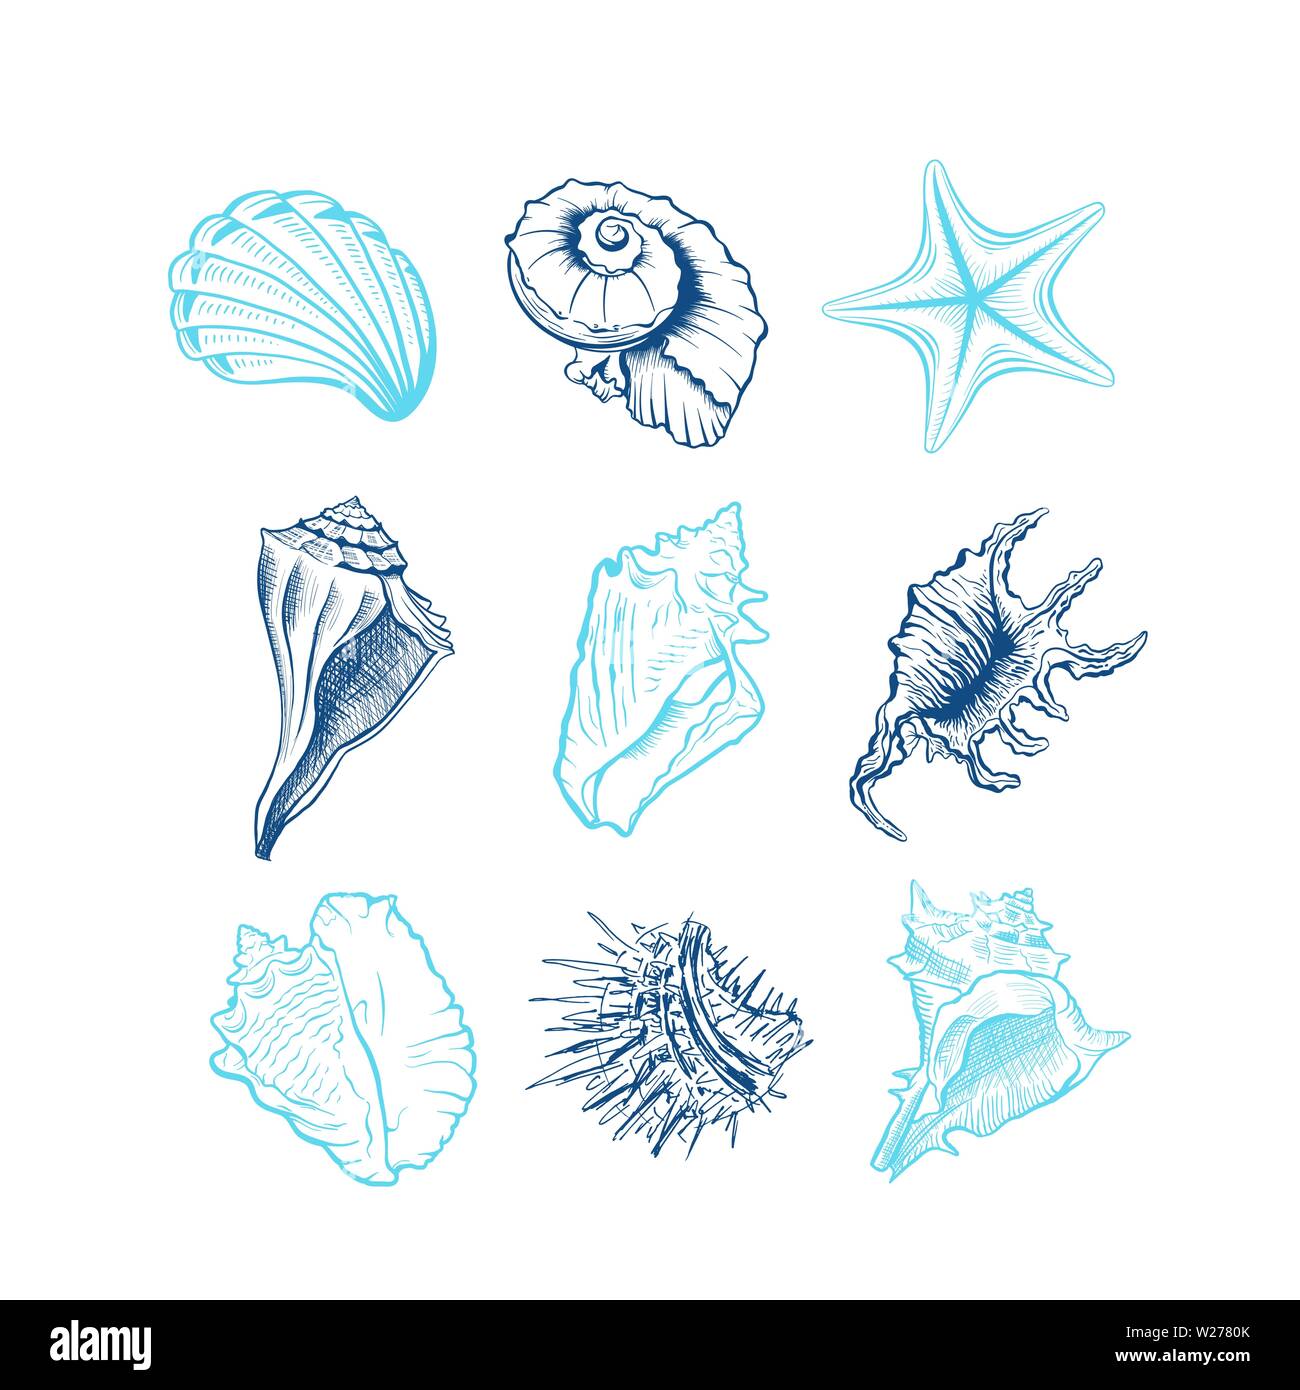 Seashells disegnati a mano illustrazioni vettoriali set. Animali subacquei, stelle marine, ricci di mare inchiostro blu incisioni isolati su sfondo bianco. Fauna oceanica, conformato a spirale conch disegni. Tattoo Adesivi Illustrazione Vettoriale